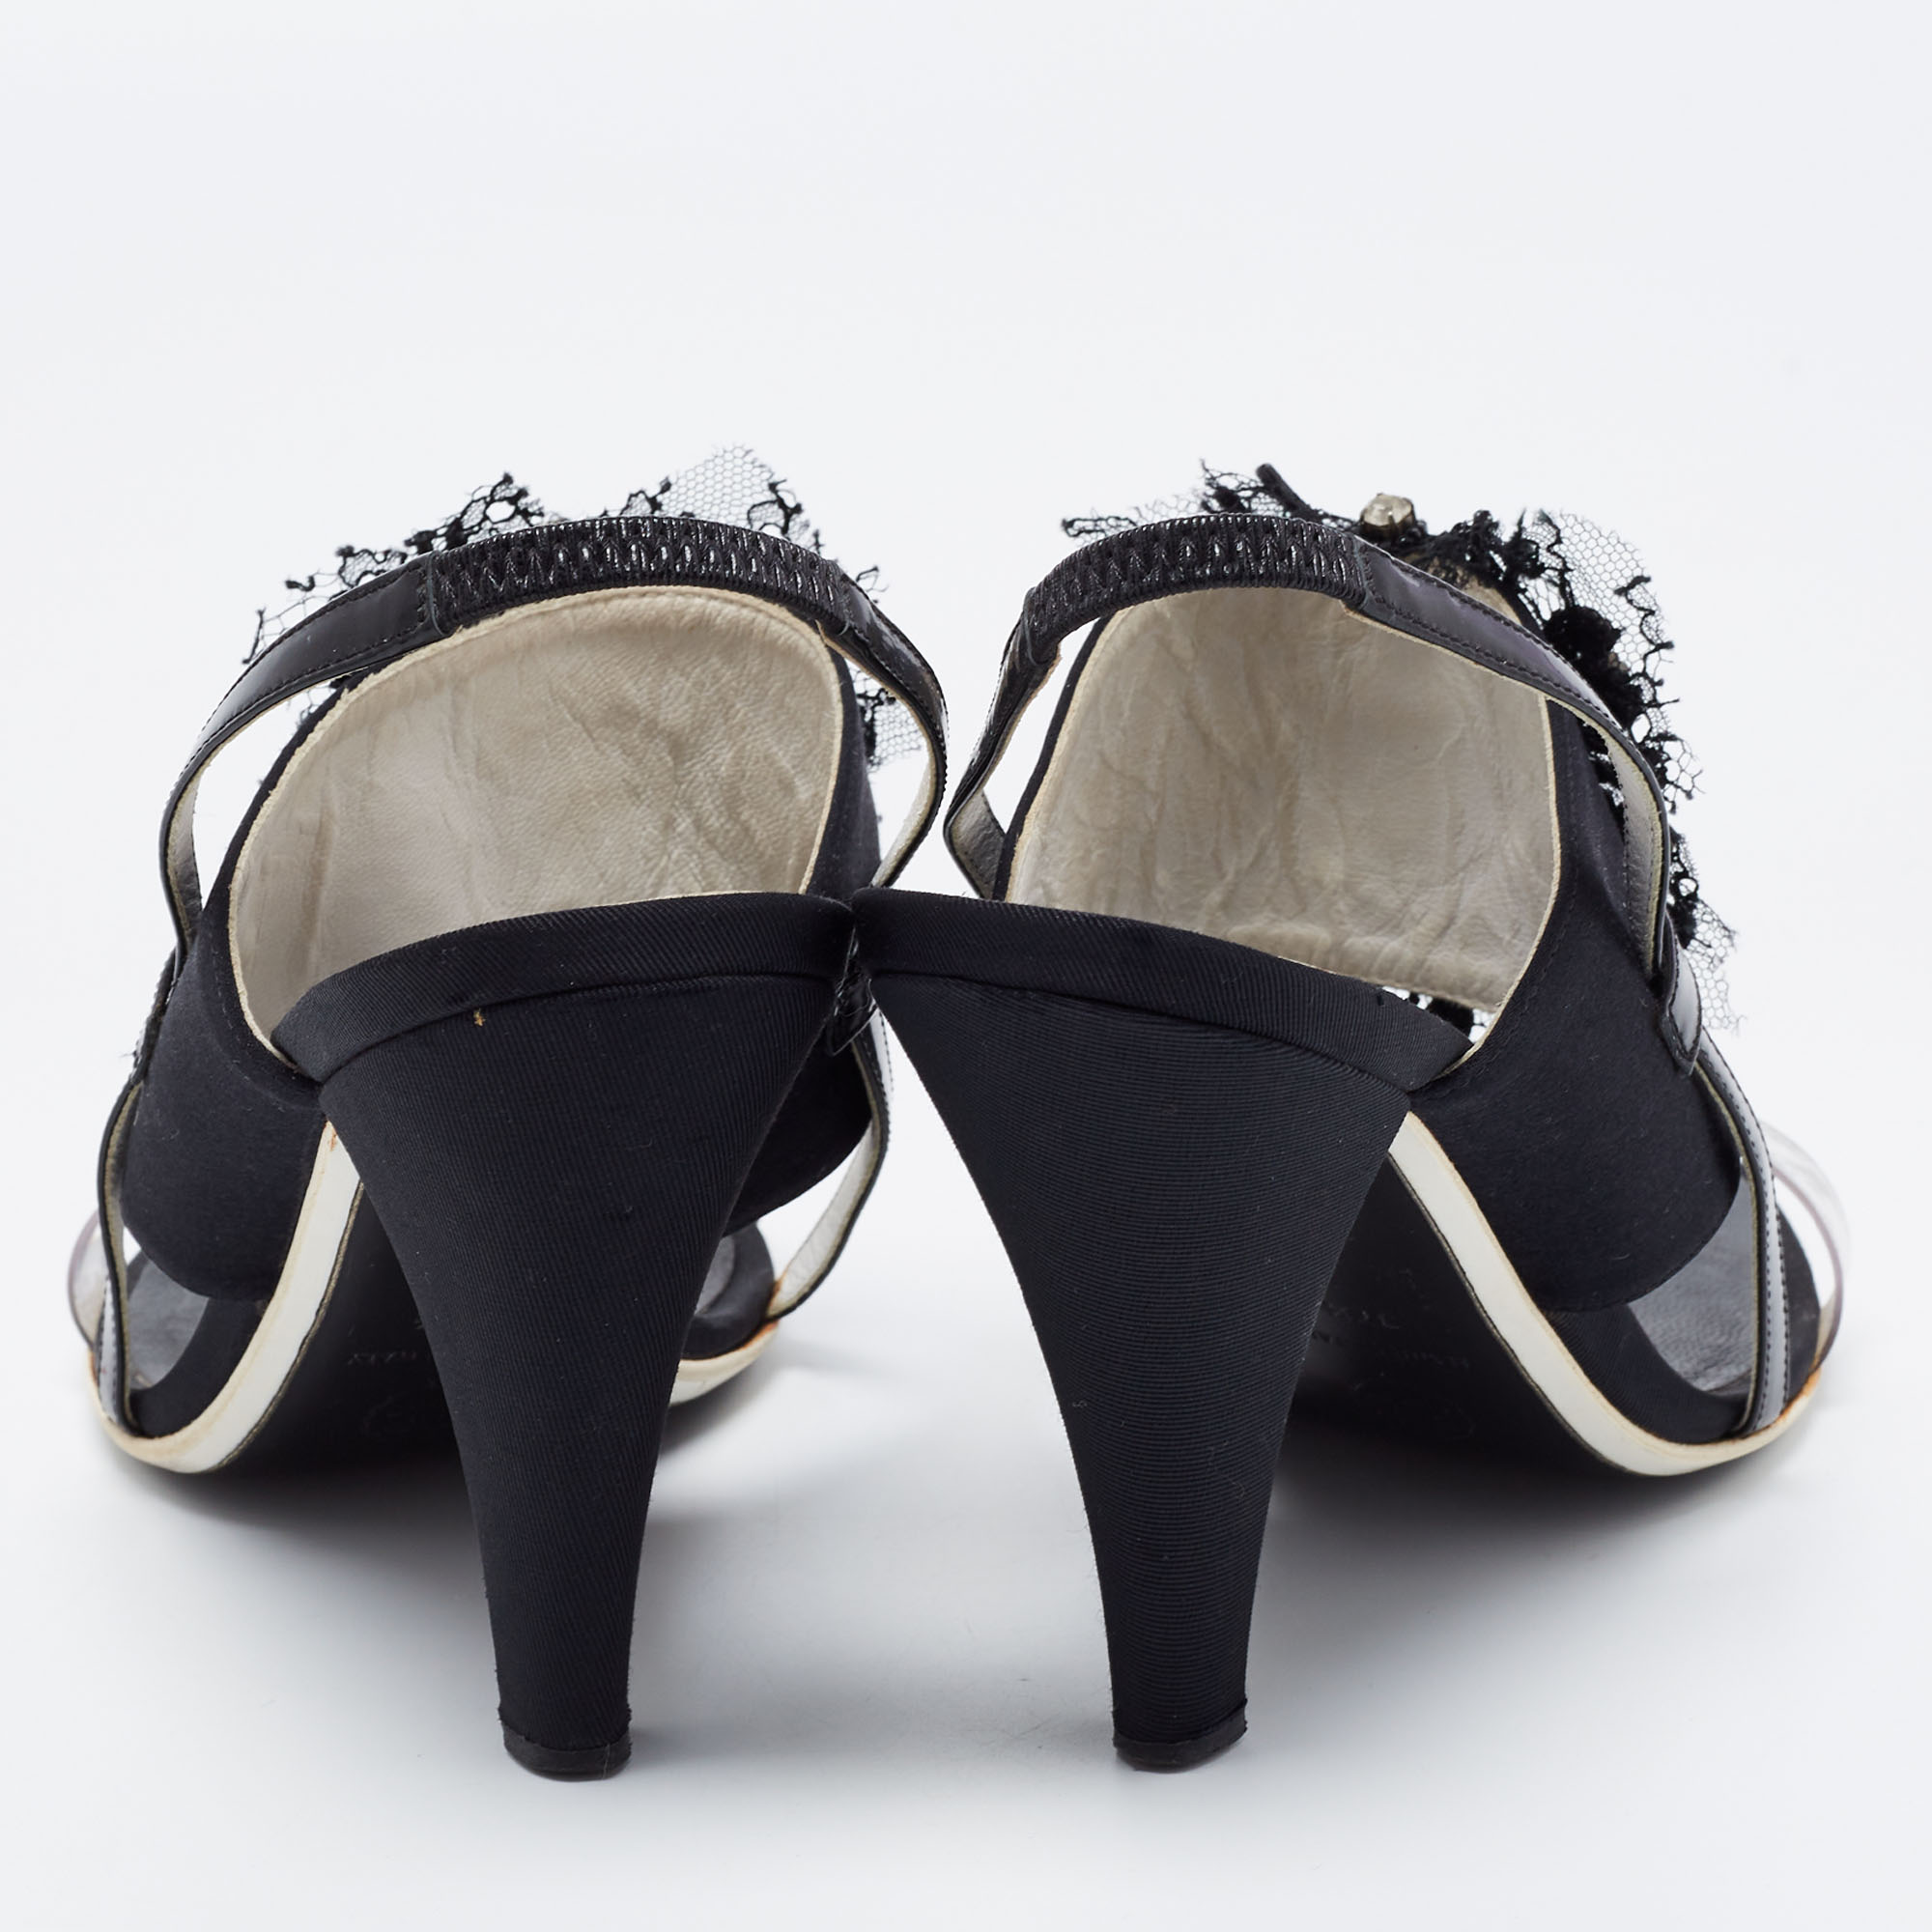 Chanel Black Satin And PVC Embellished Slingback Sandals Size 37.5